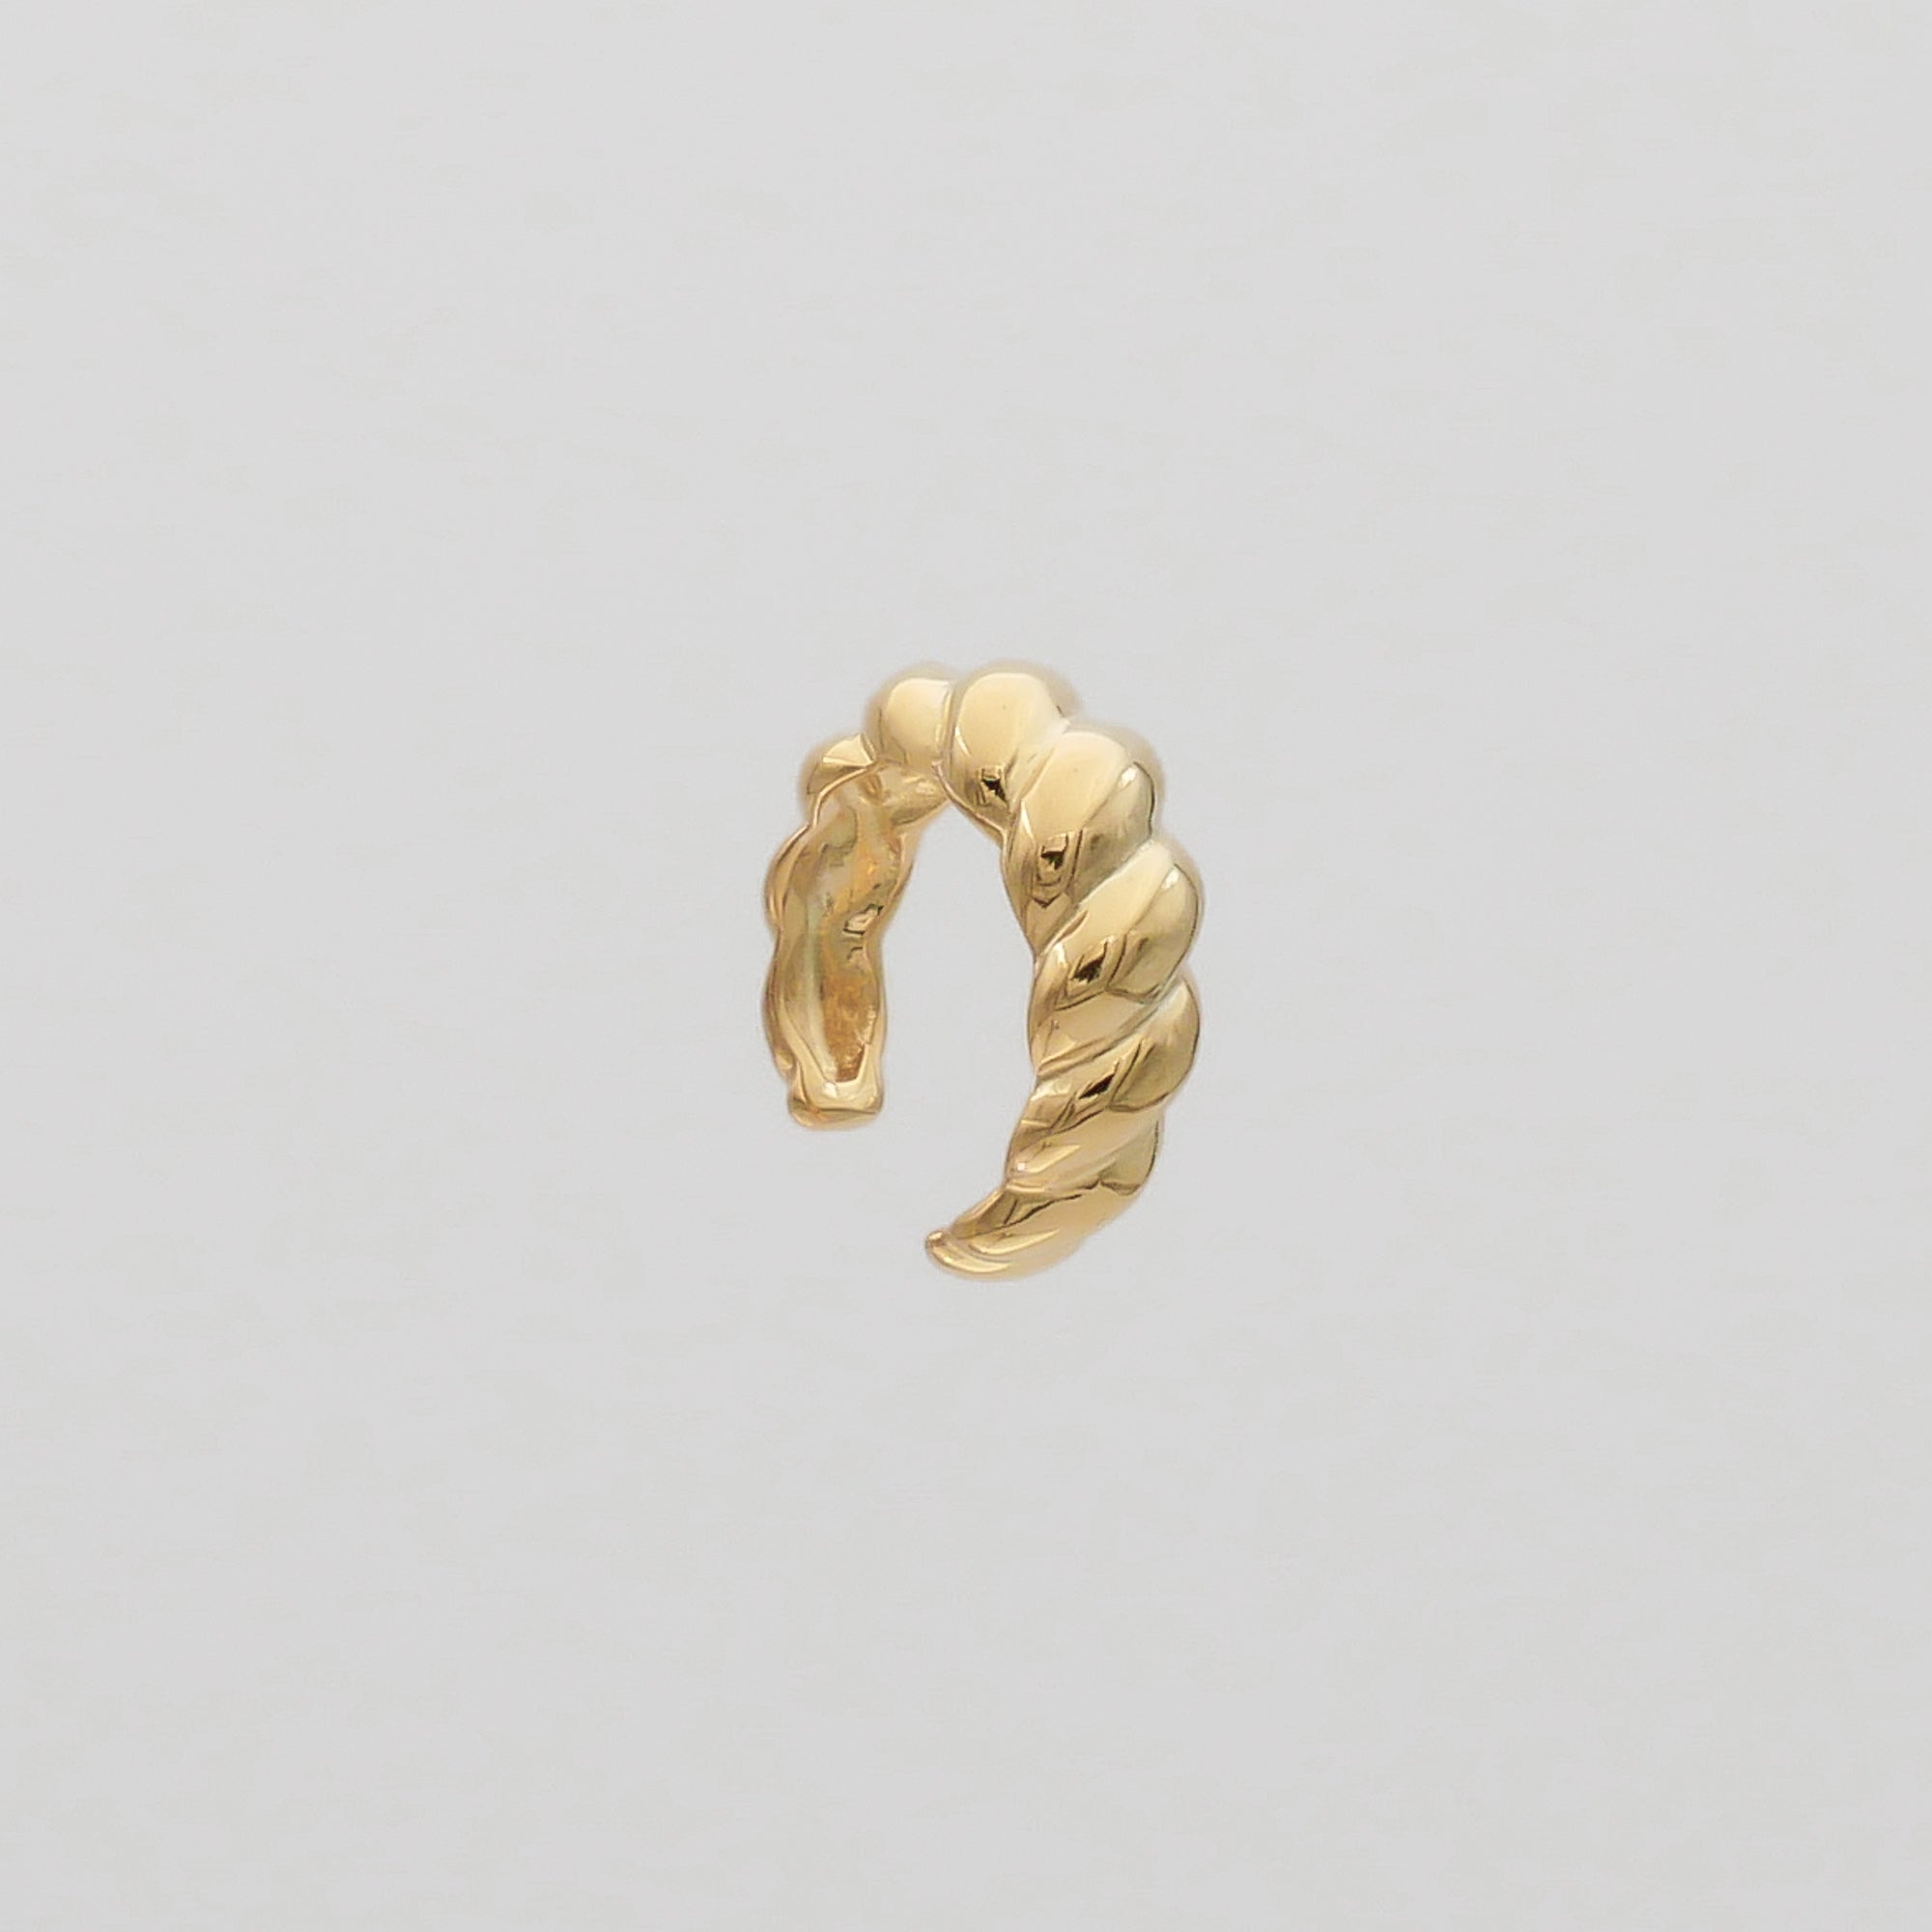 Gold Venus Ear Cuff by PRYA